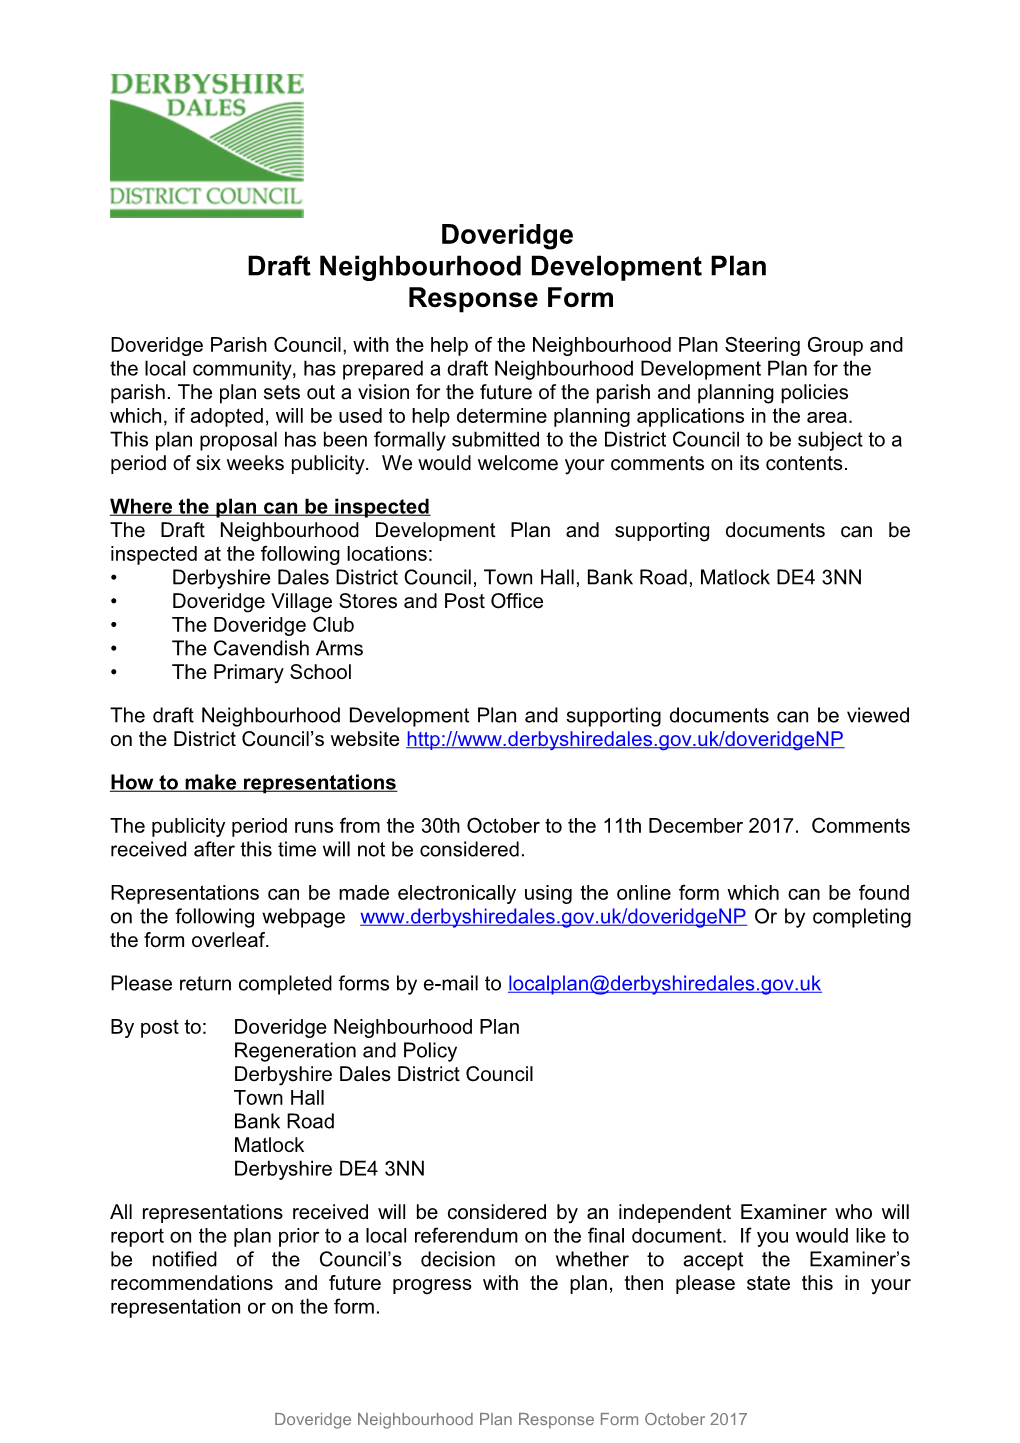 Draft Neighbourhood Development Plan